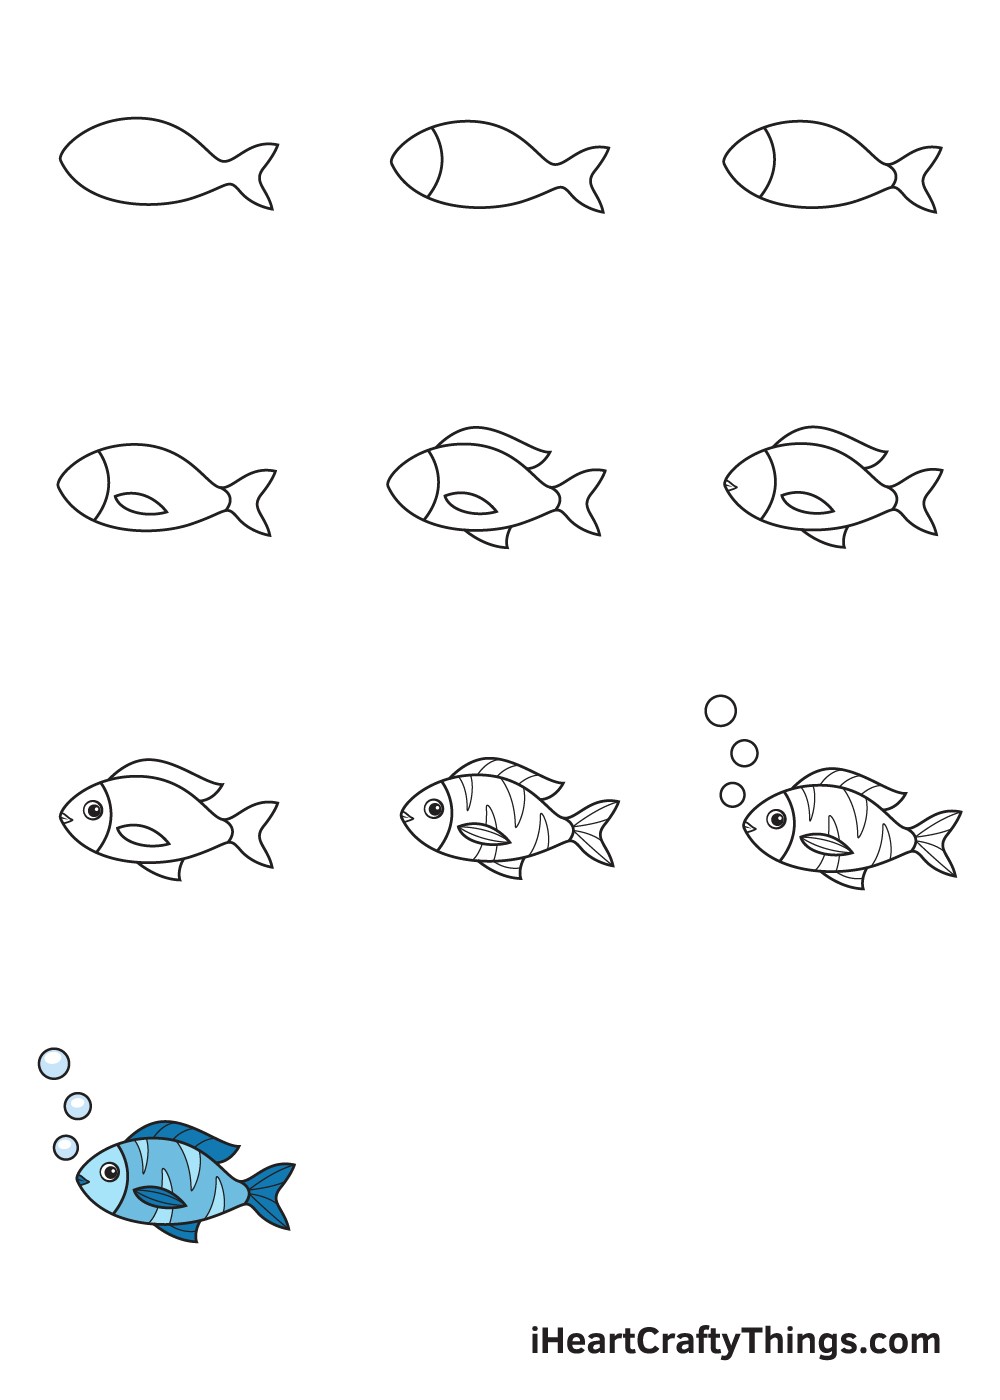 How to draw fish idea 1